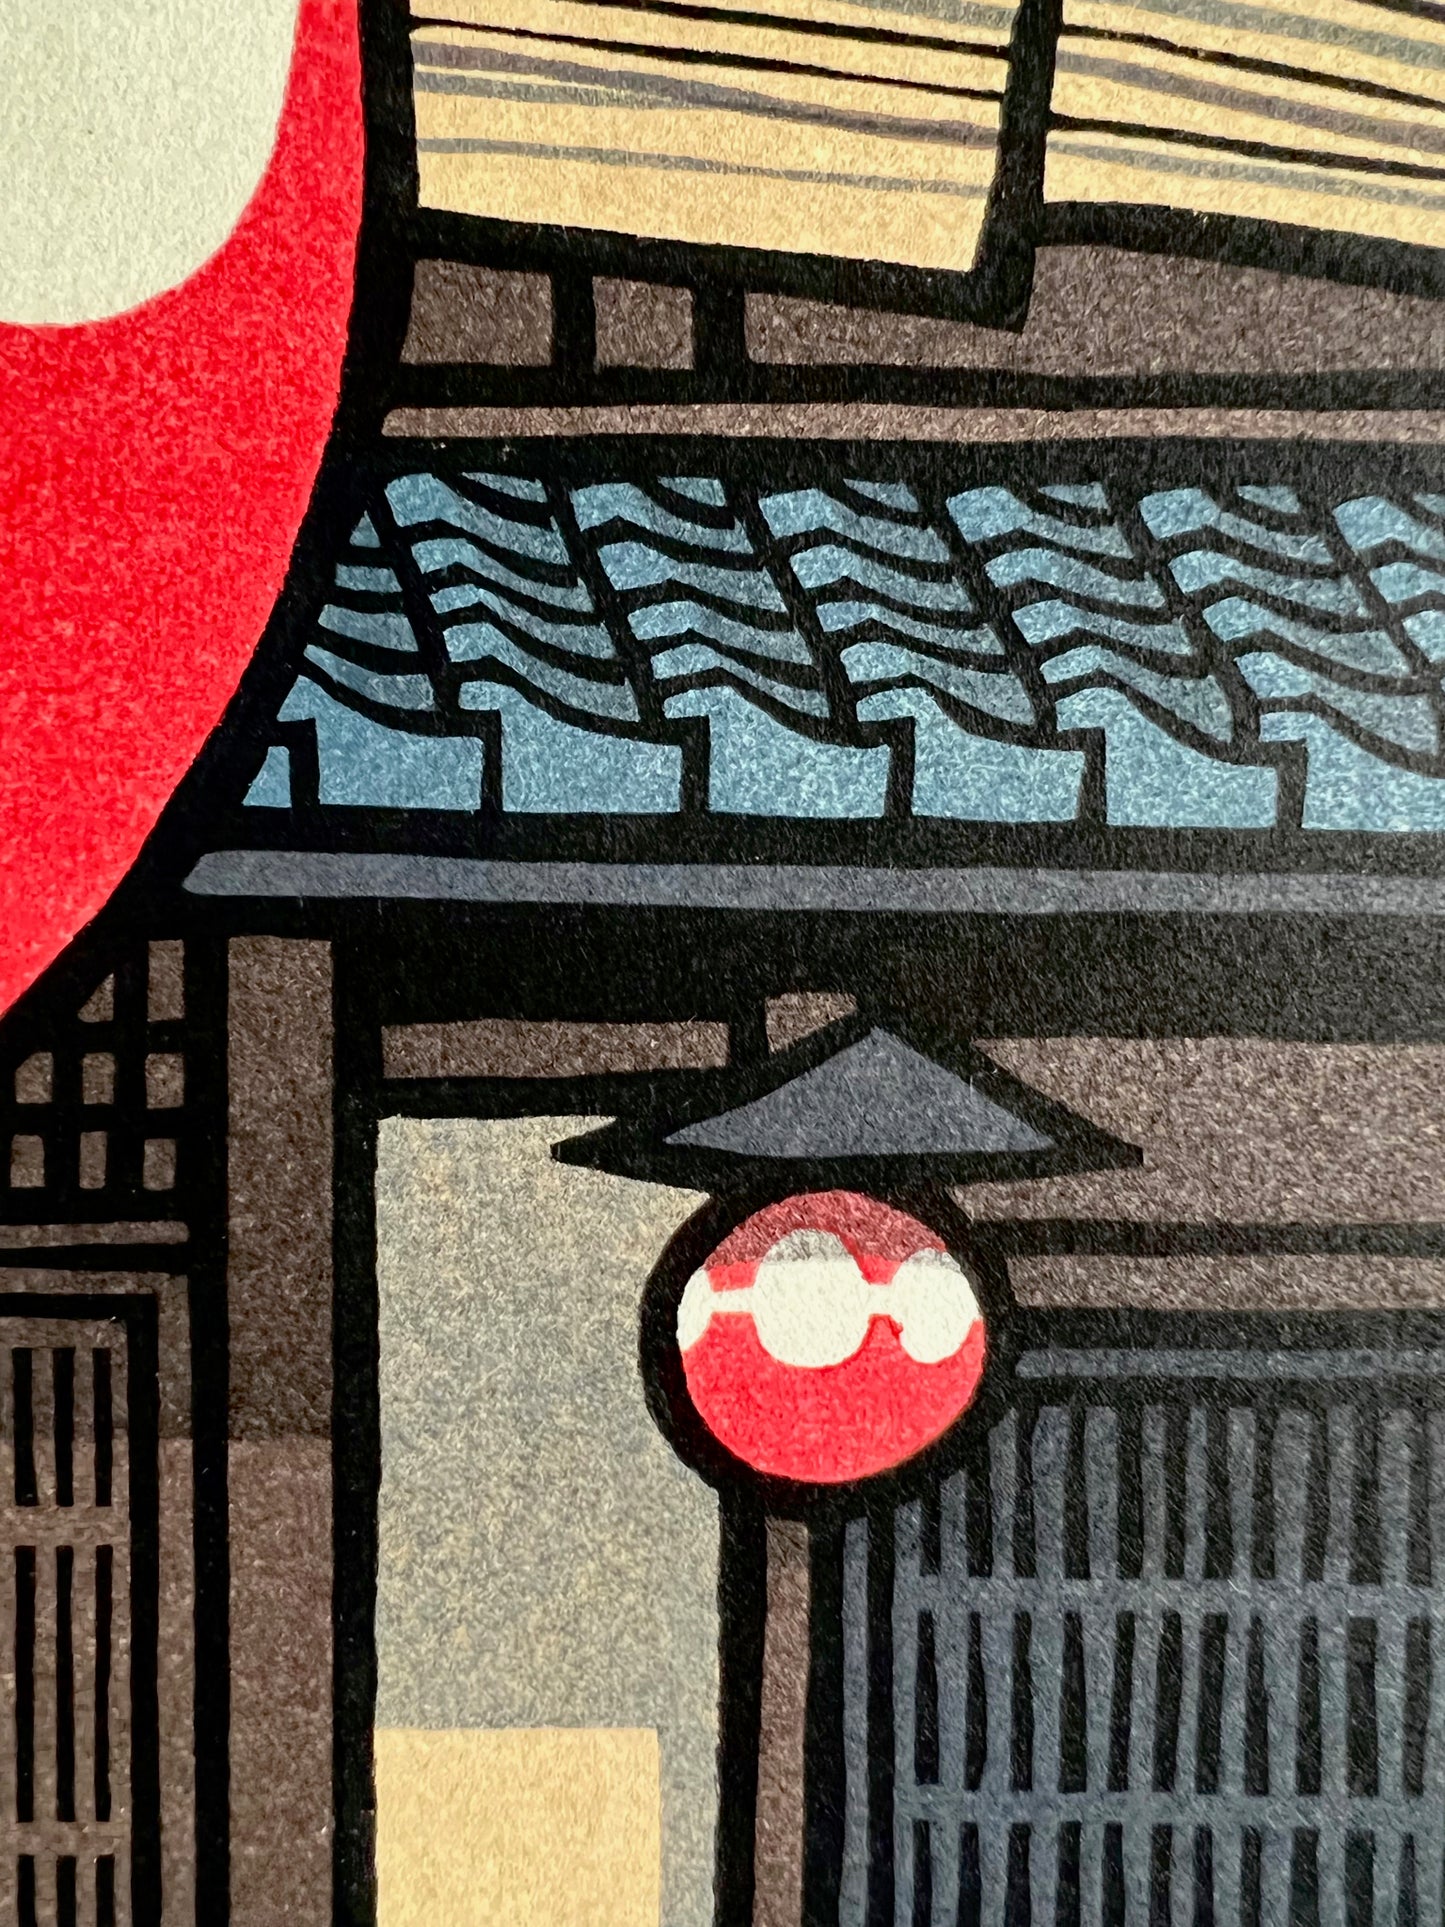 estampe japonaise grosse lanterne rouge avec calligraphie noire devant l'entrée en bois et tuiles bleu vernies d'un restaurant traditionnel, gros plan sur la petite lanterne et les tuiles vernissées